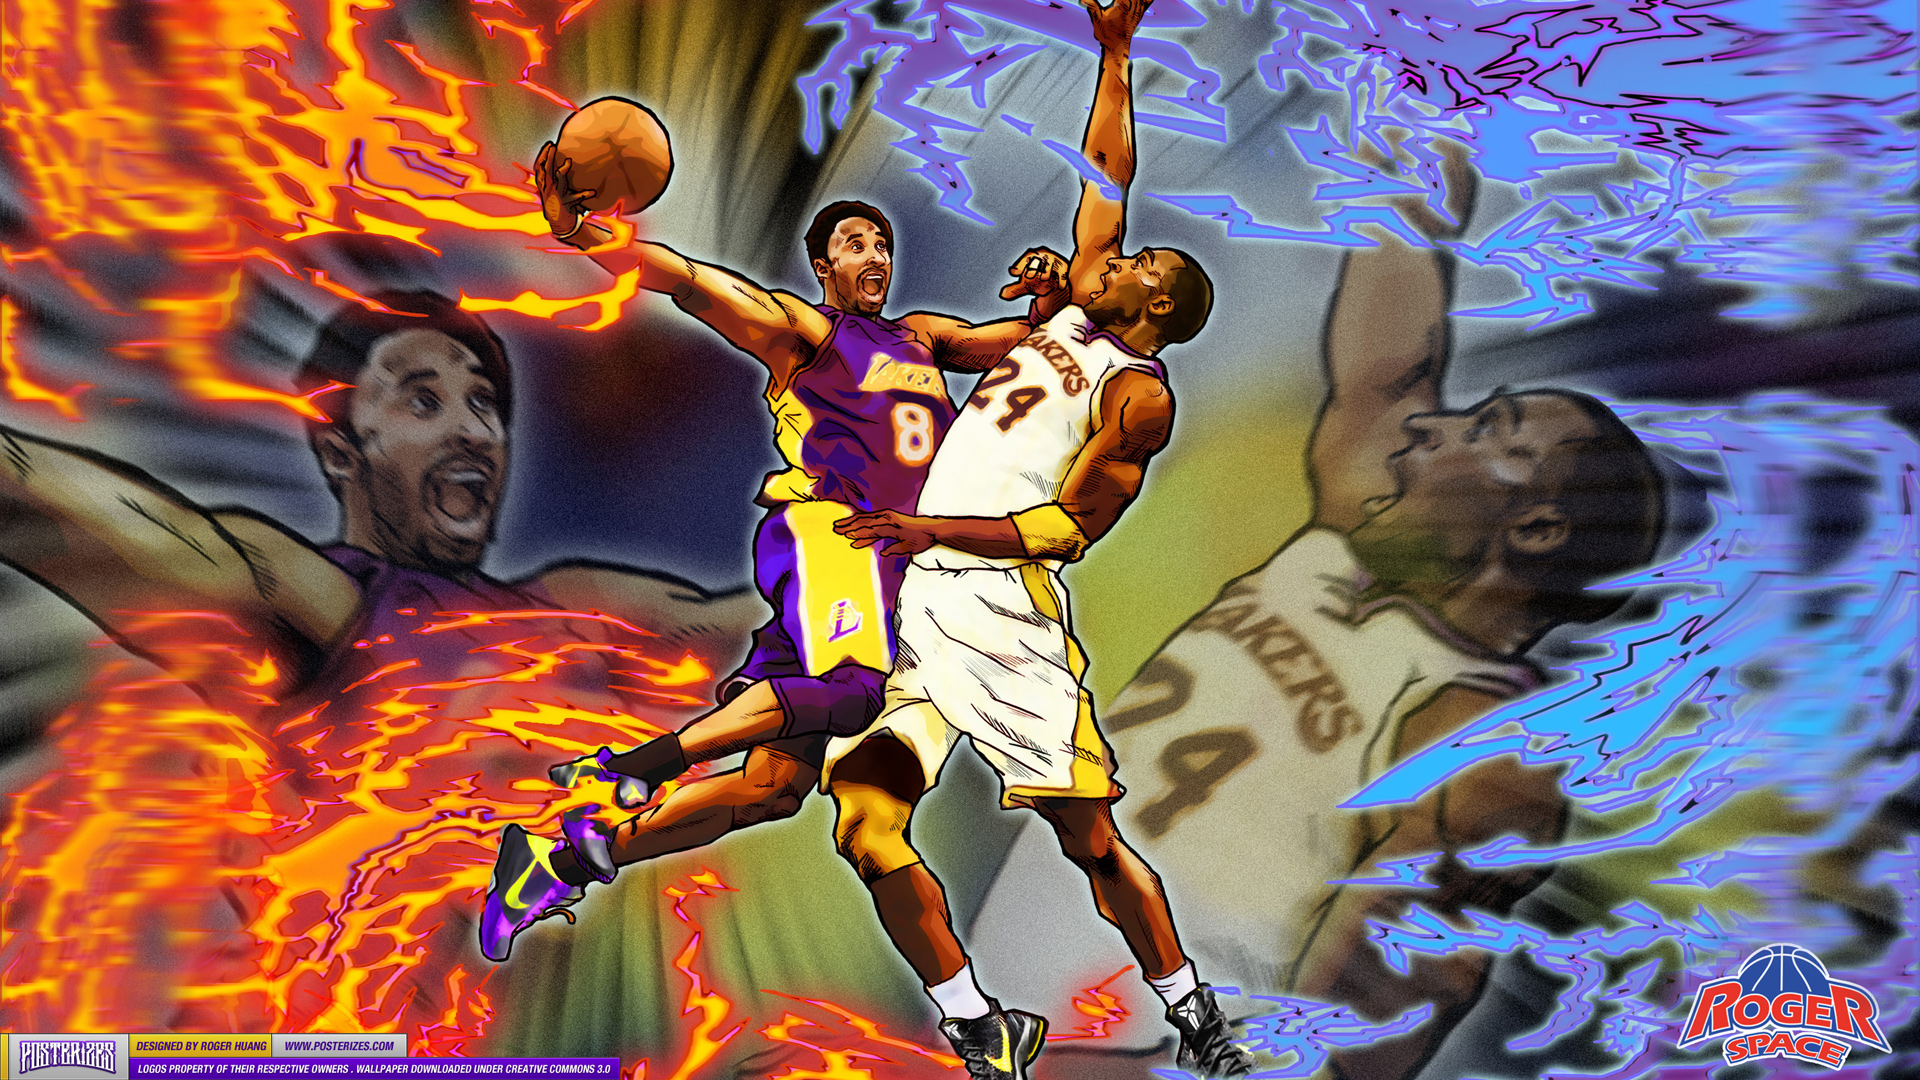 Free download Kobe 8 vs Kobe 24 Wallpaper Posterizes NBA